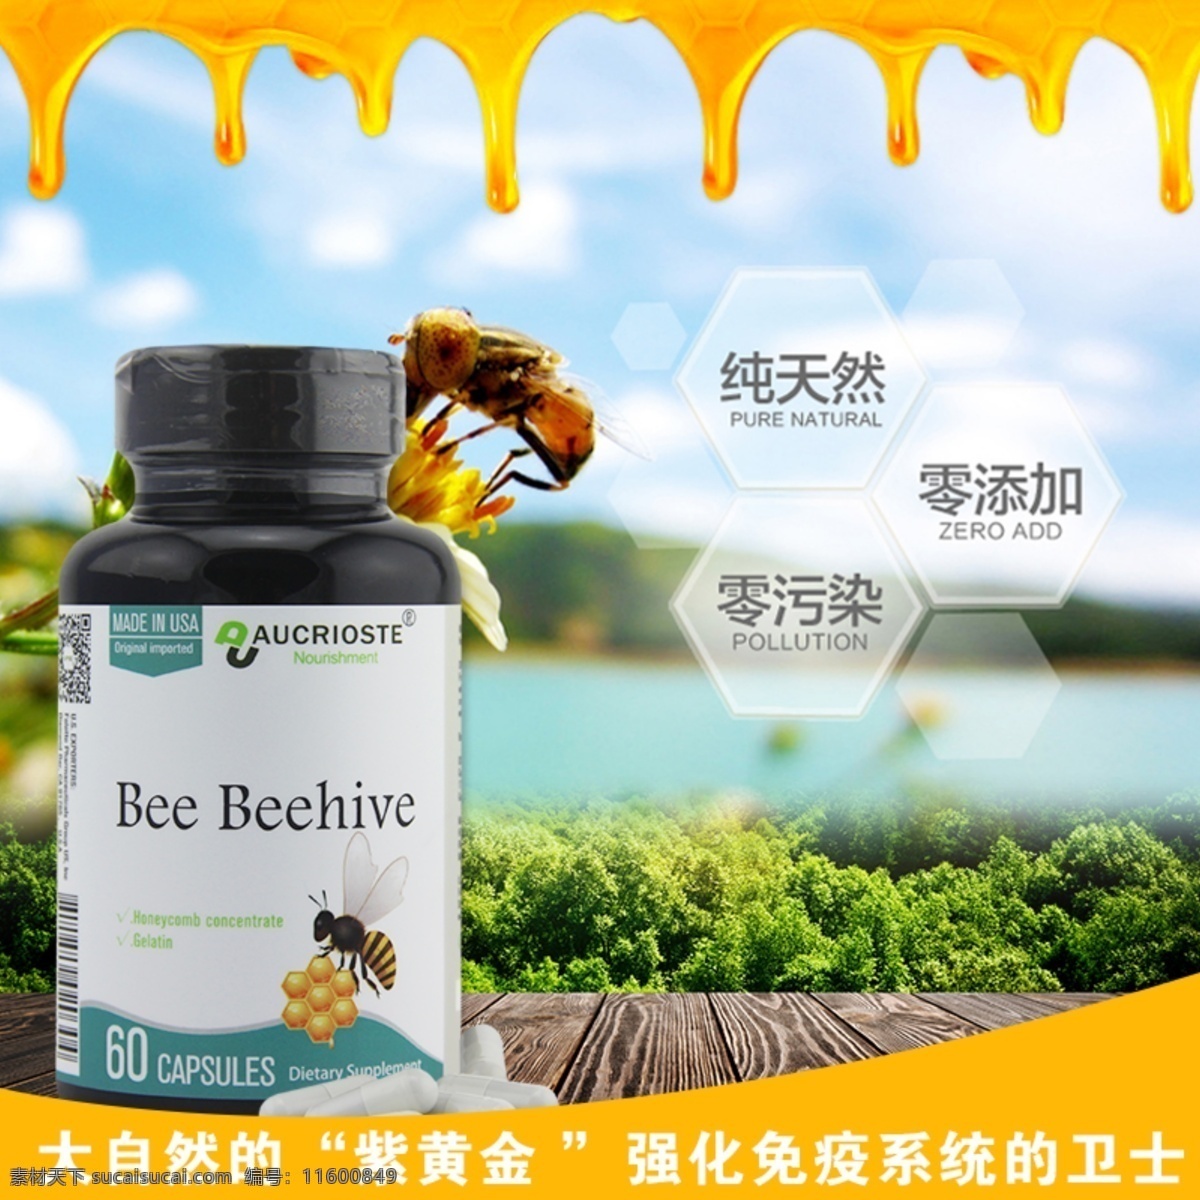 蜂巢 提取 物主 图 强化 免疫 系统 健康 无污染 黄色